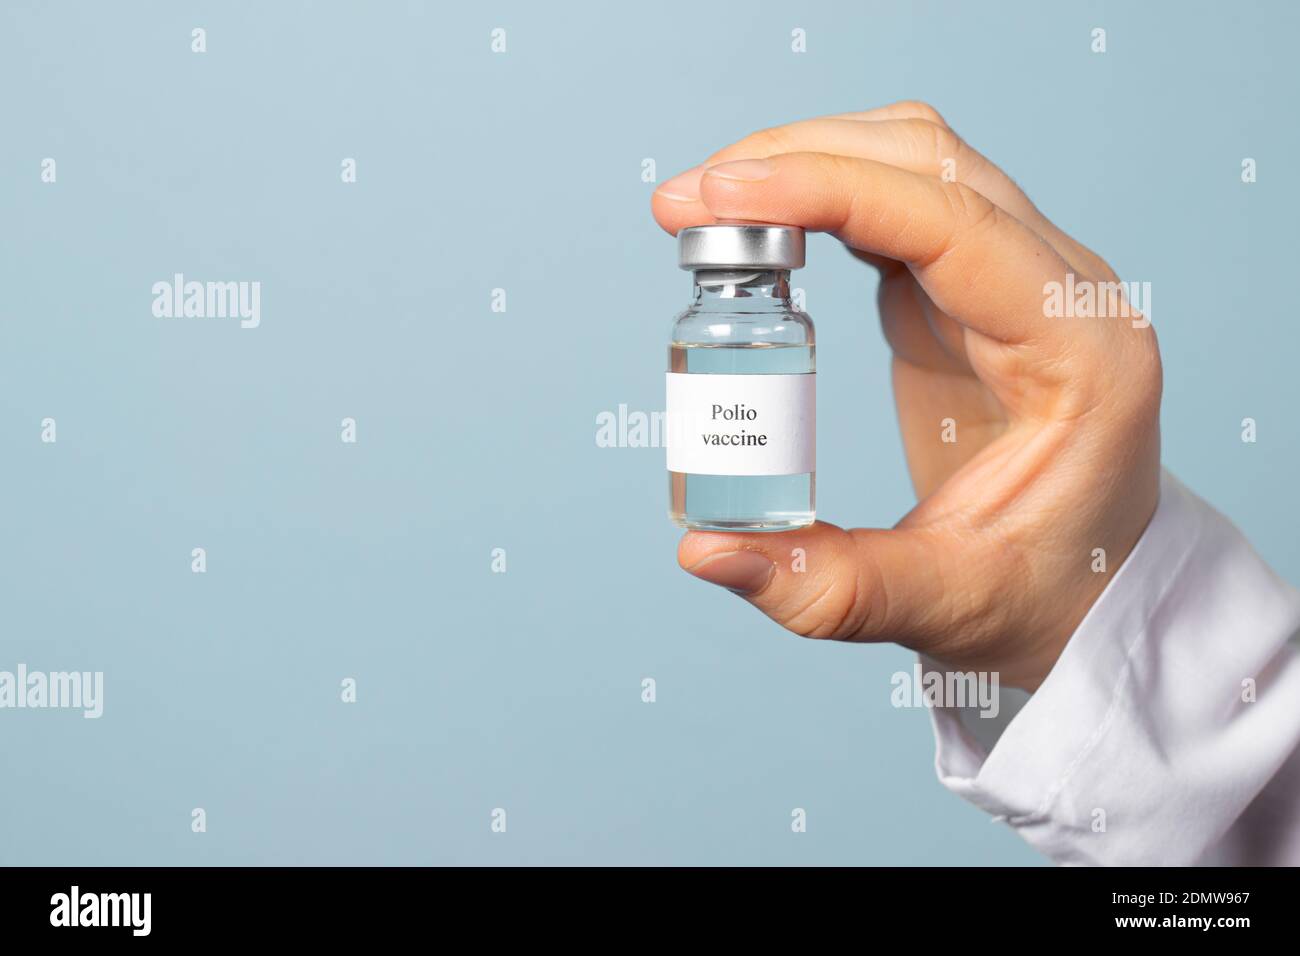 Ein Arzt oder Labortechniker hält einen Polio-Impfstoff auf blauem Hintergrund. Impfung und Prävention Poliomyelitis. Kindliche Lähmung Stockfoto